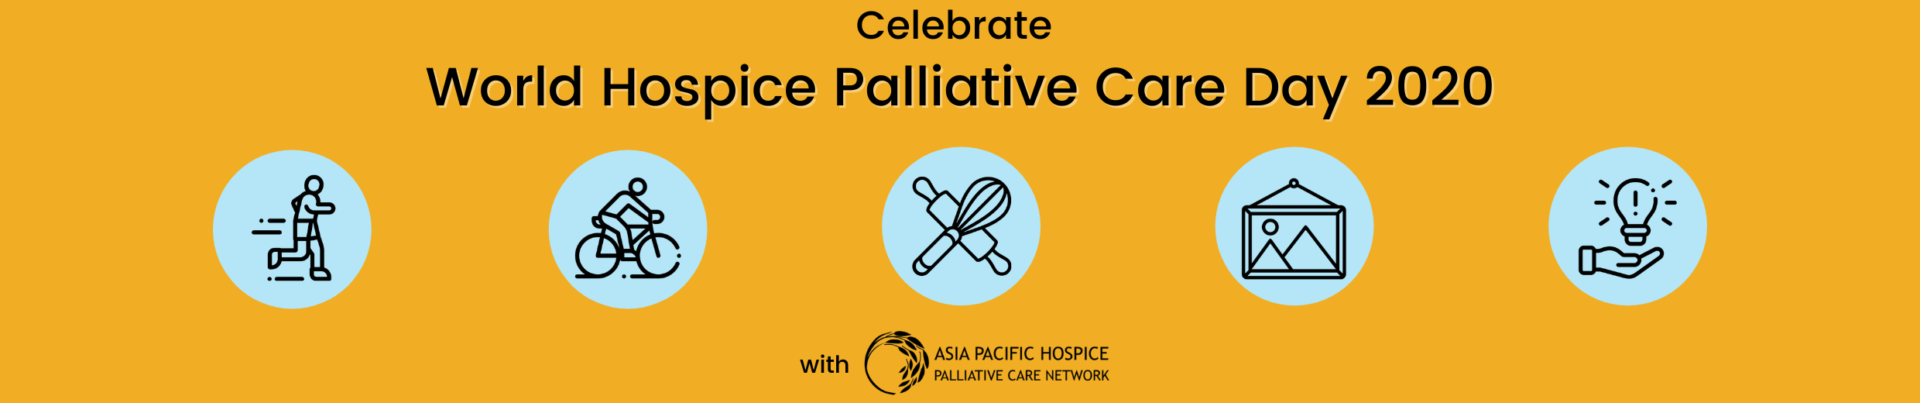 Commemorate World Hospice Palliative Care Day 2020